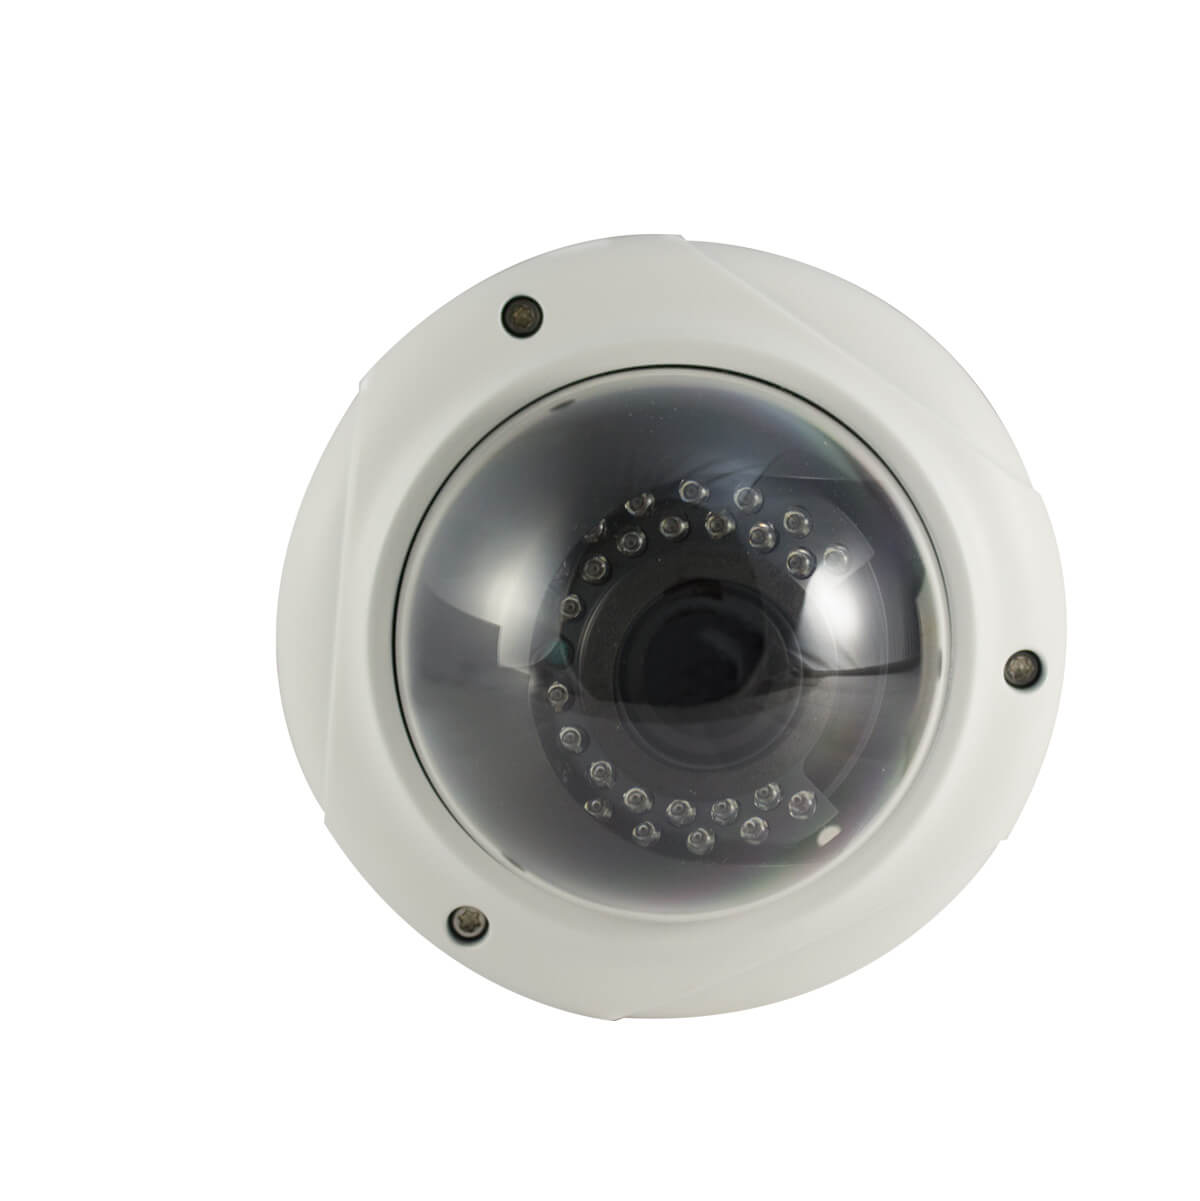 Camara tipo domo, Sensor CMOS HDIS 1/2.8, 1200TVL, 30 LEDs, 30m IR